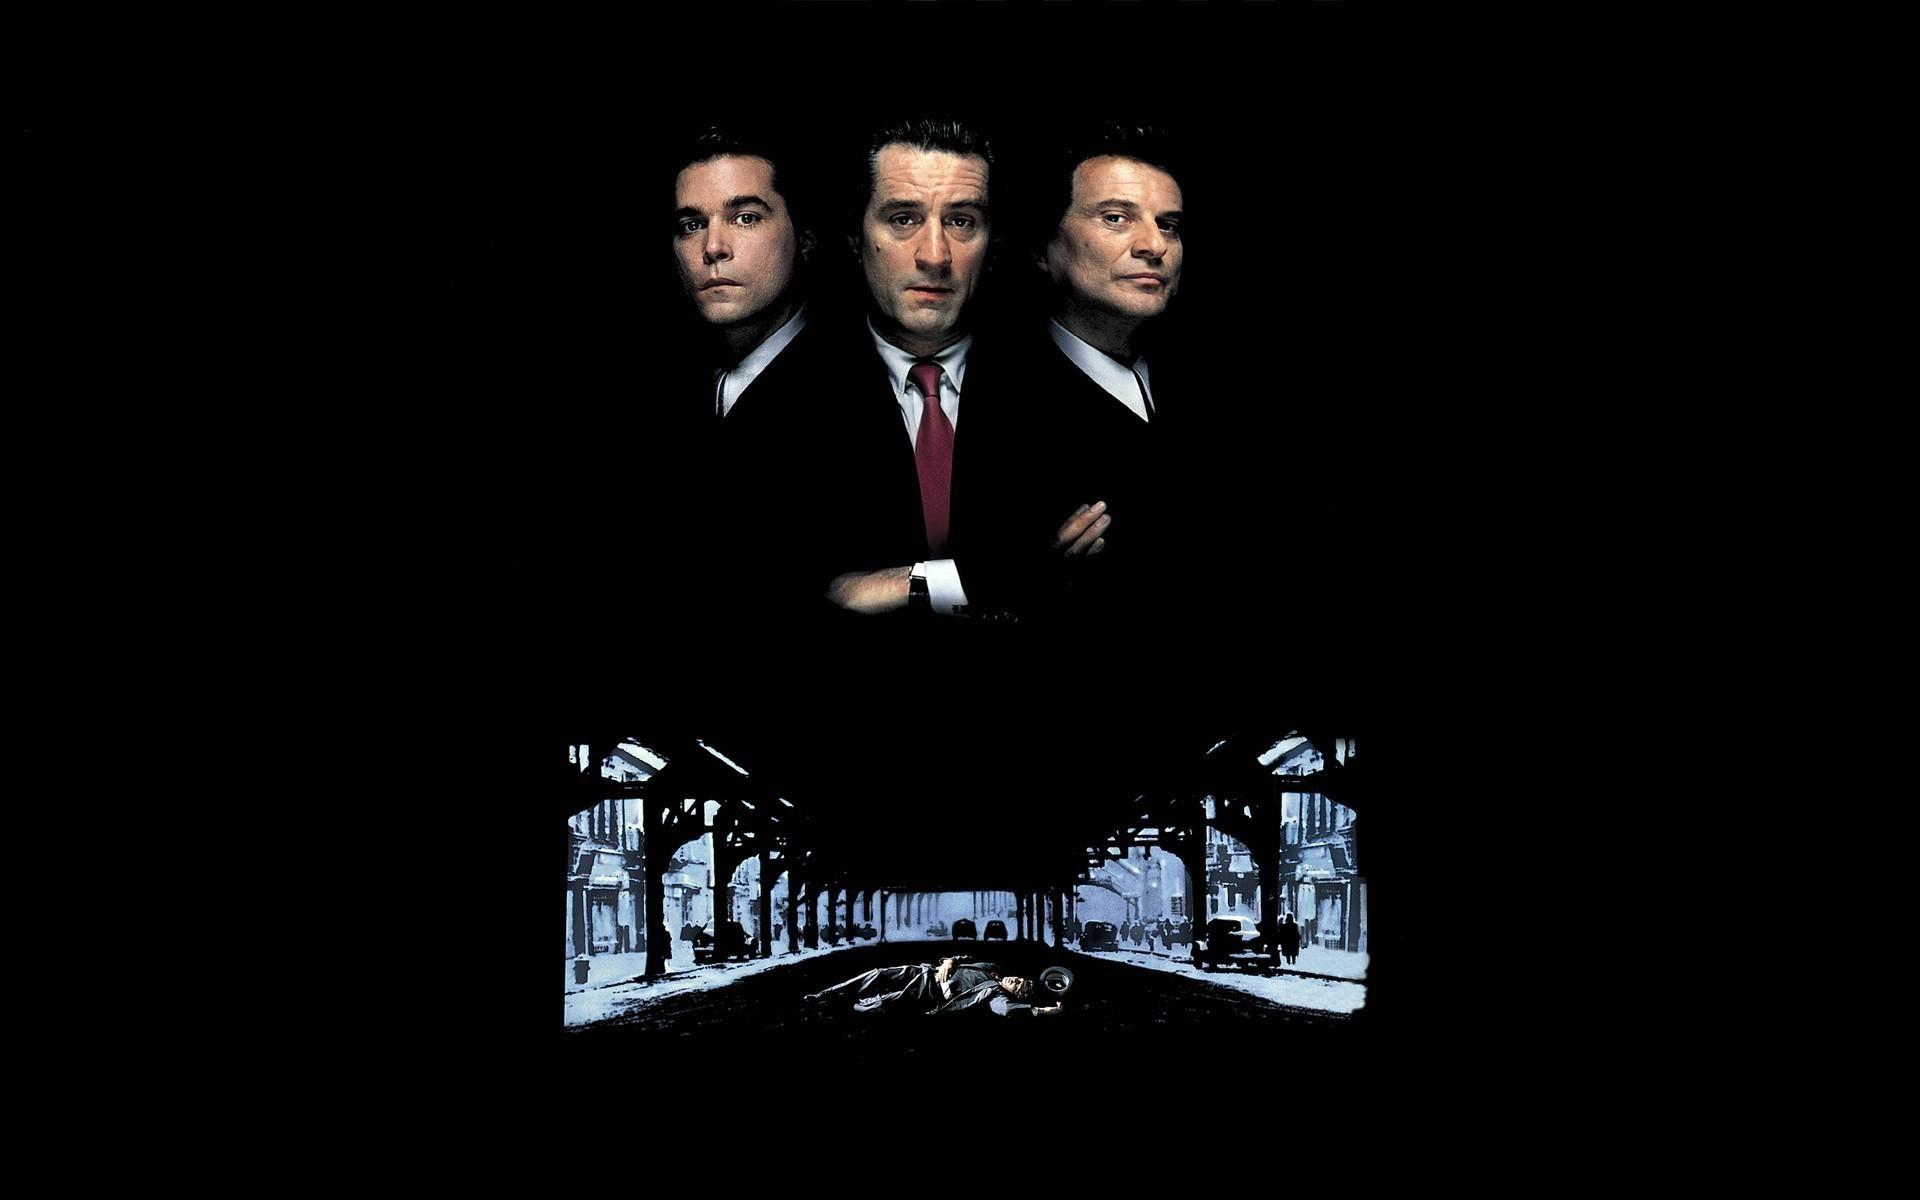 Goodfellas martin scorsese gangster mafia movies wallpaper